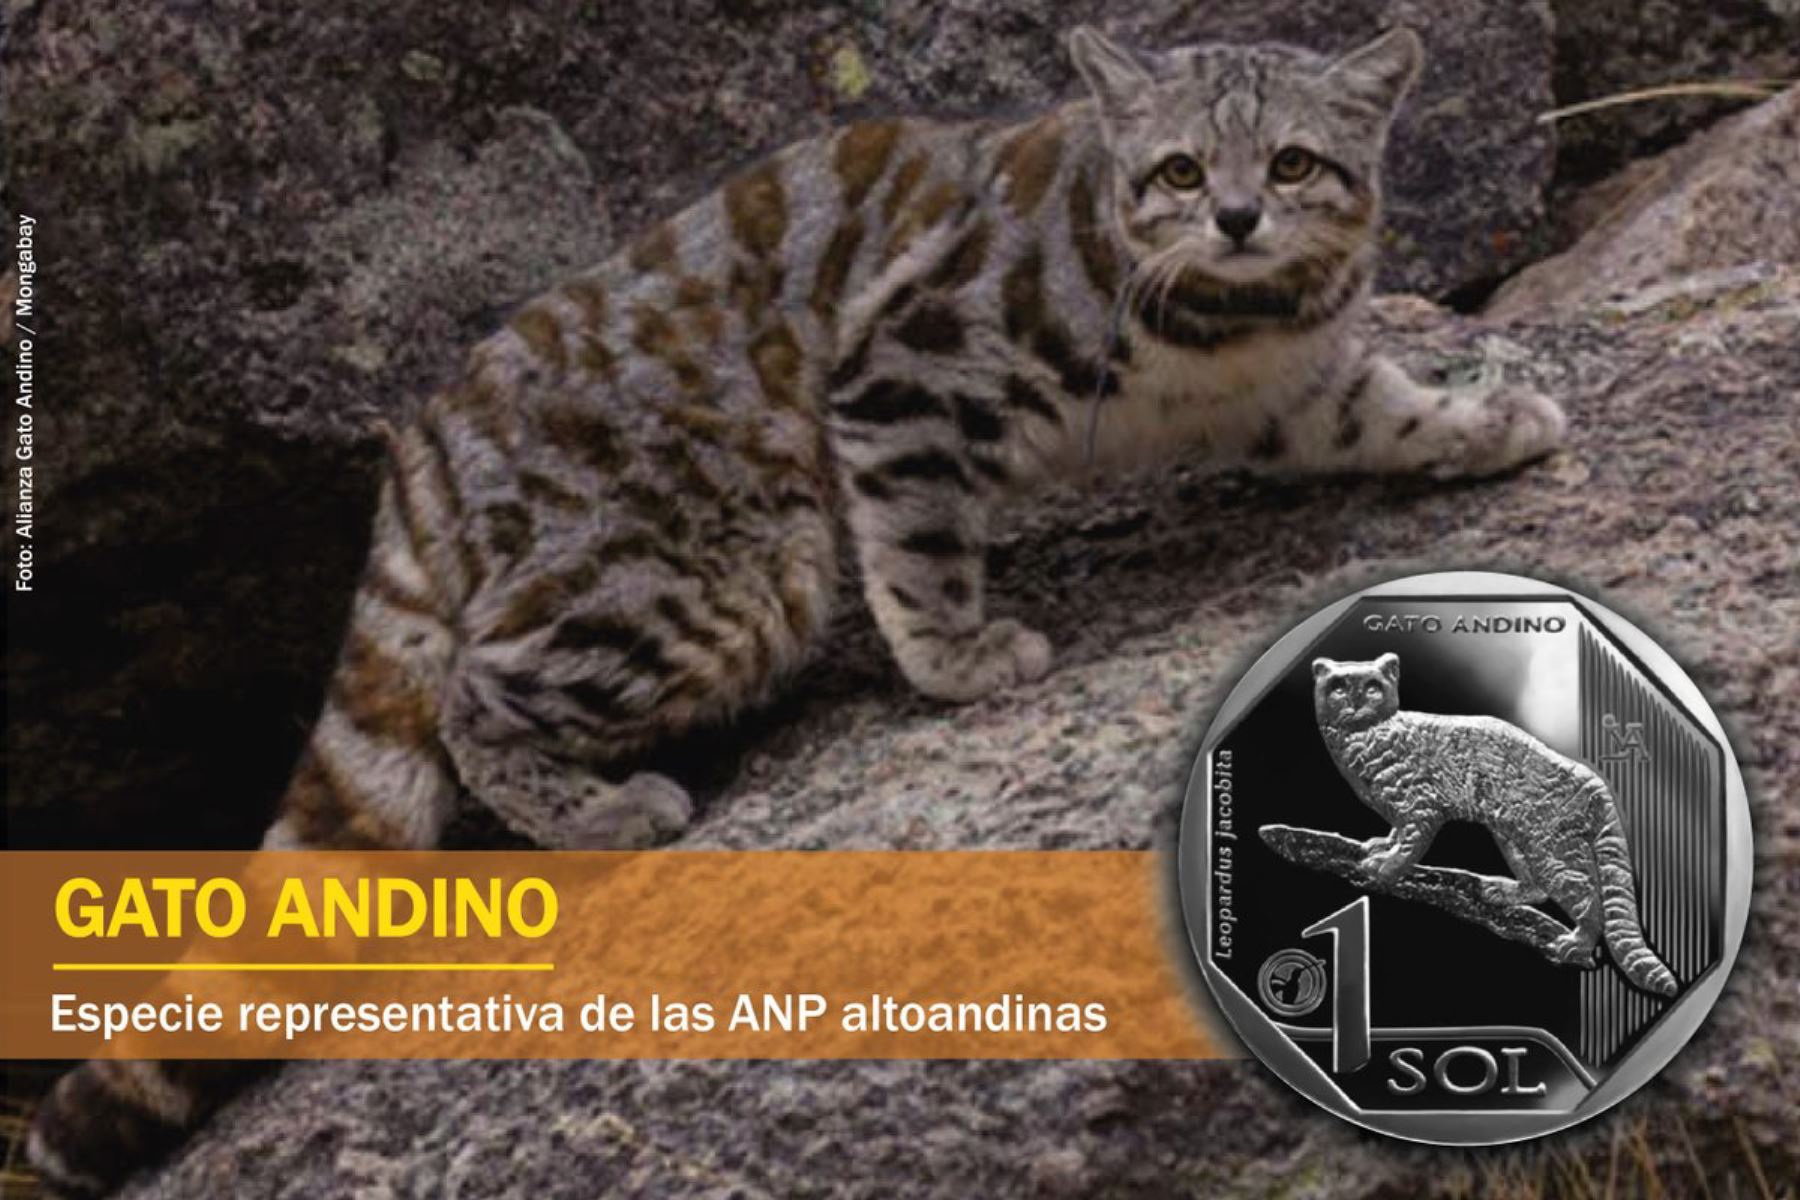 Conoce al gato andino, la imagen de la nueva moneda de S/ 1.00.